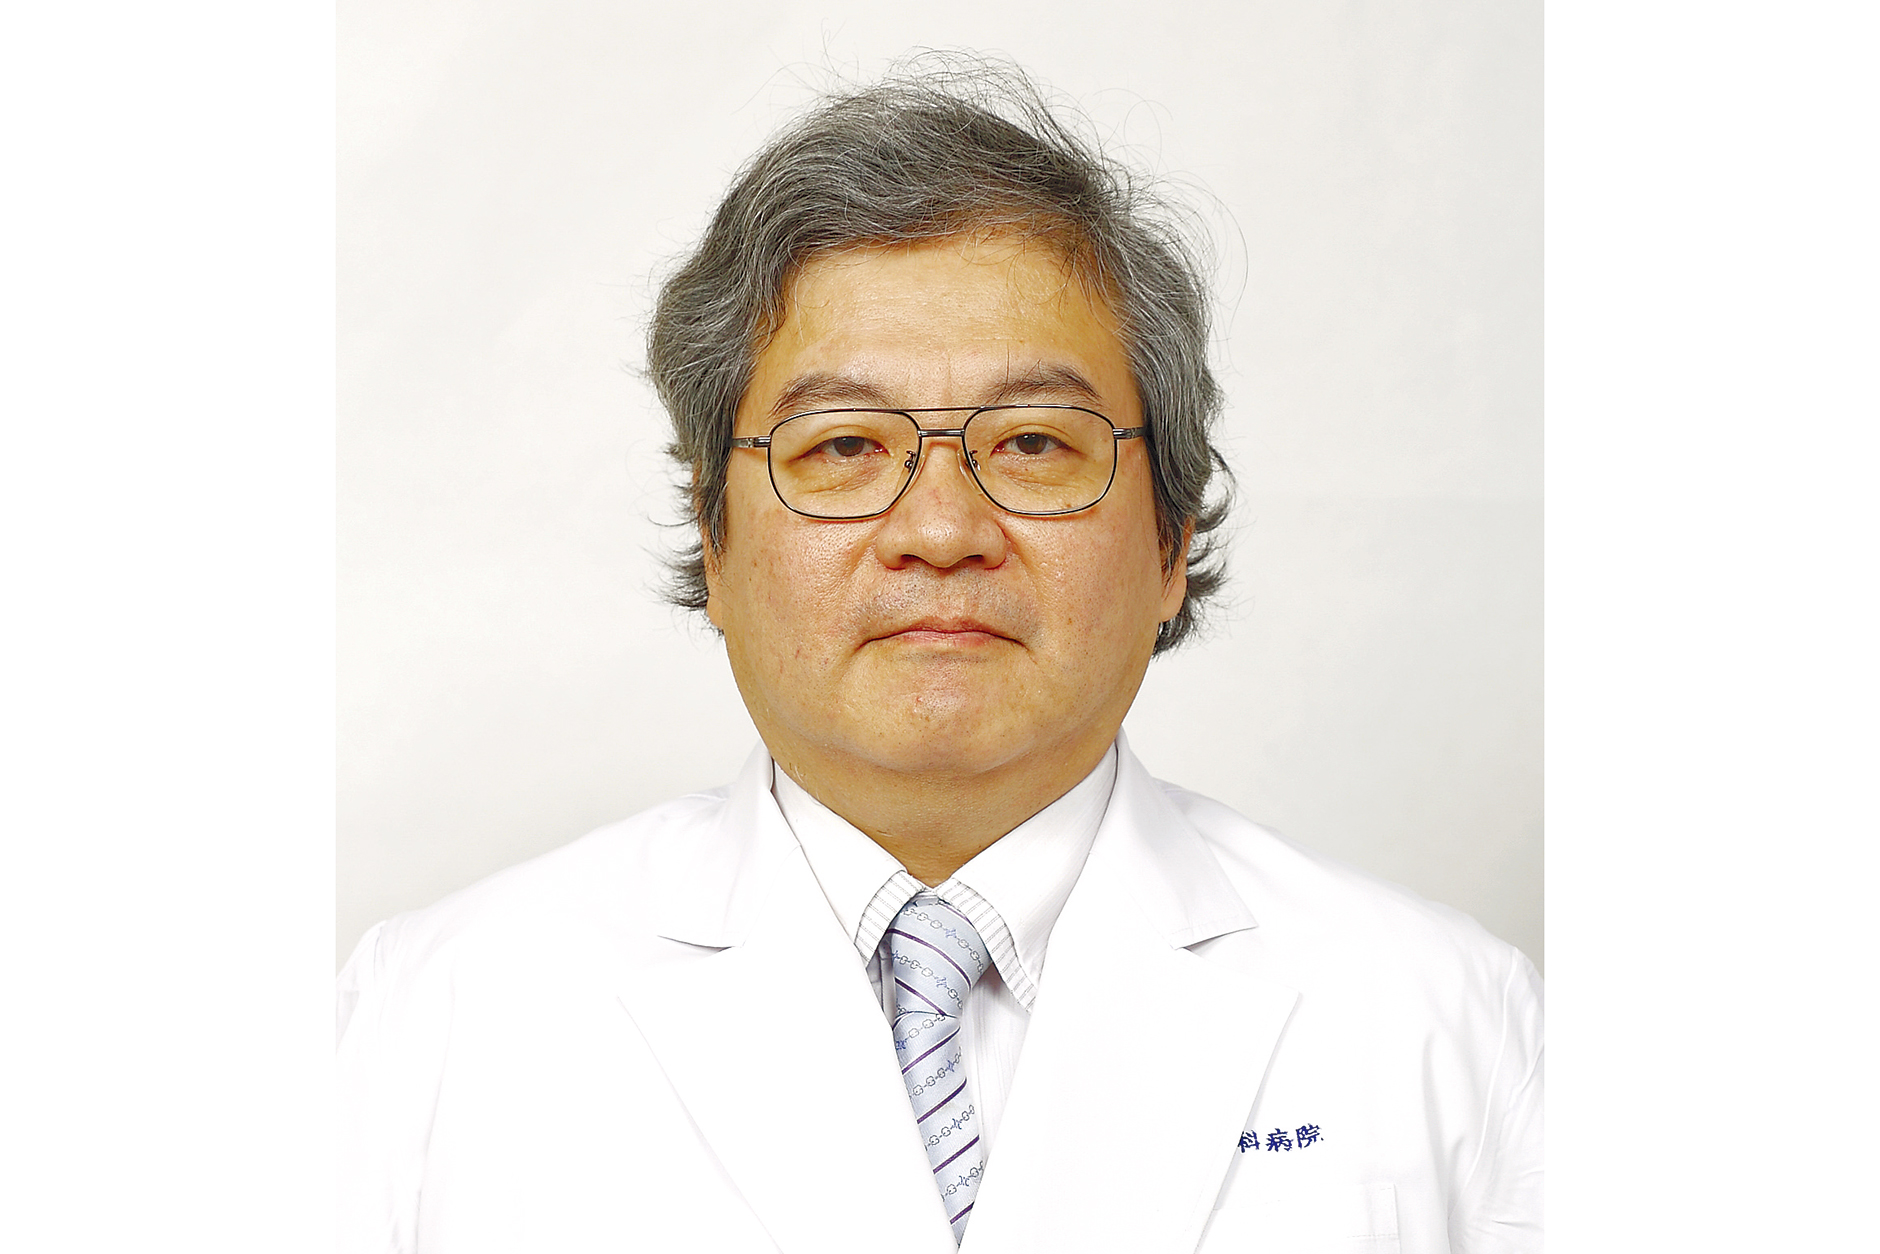 出田眼科病院 副院長 川崎 勉氏 東京医科歯科大学医学部卒業。網膜剥離治療の黎明（れいめい）期から約25年間治療に当たり、地域医療に貢献している